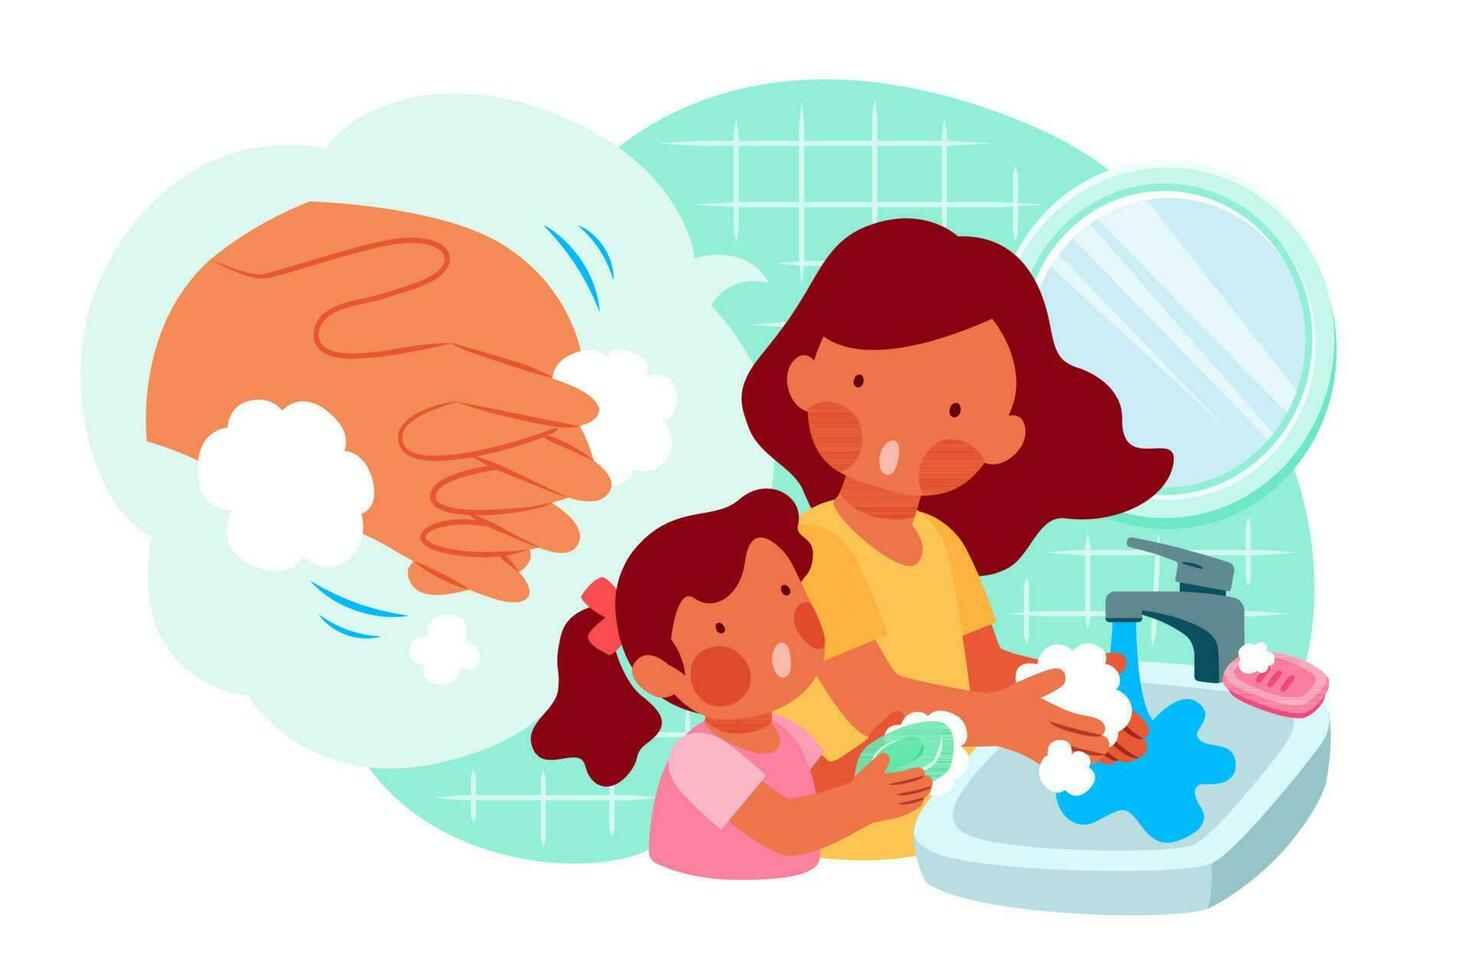 mãe é ensino dela filha quão para lavar mãos devidamente com sabão, covid-19 higiene promoção dentro plano estilo vetor